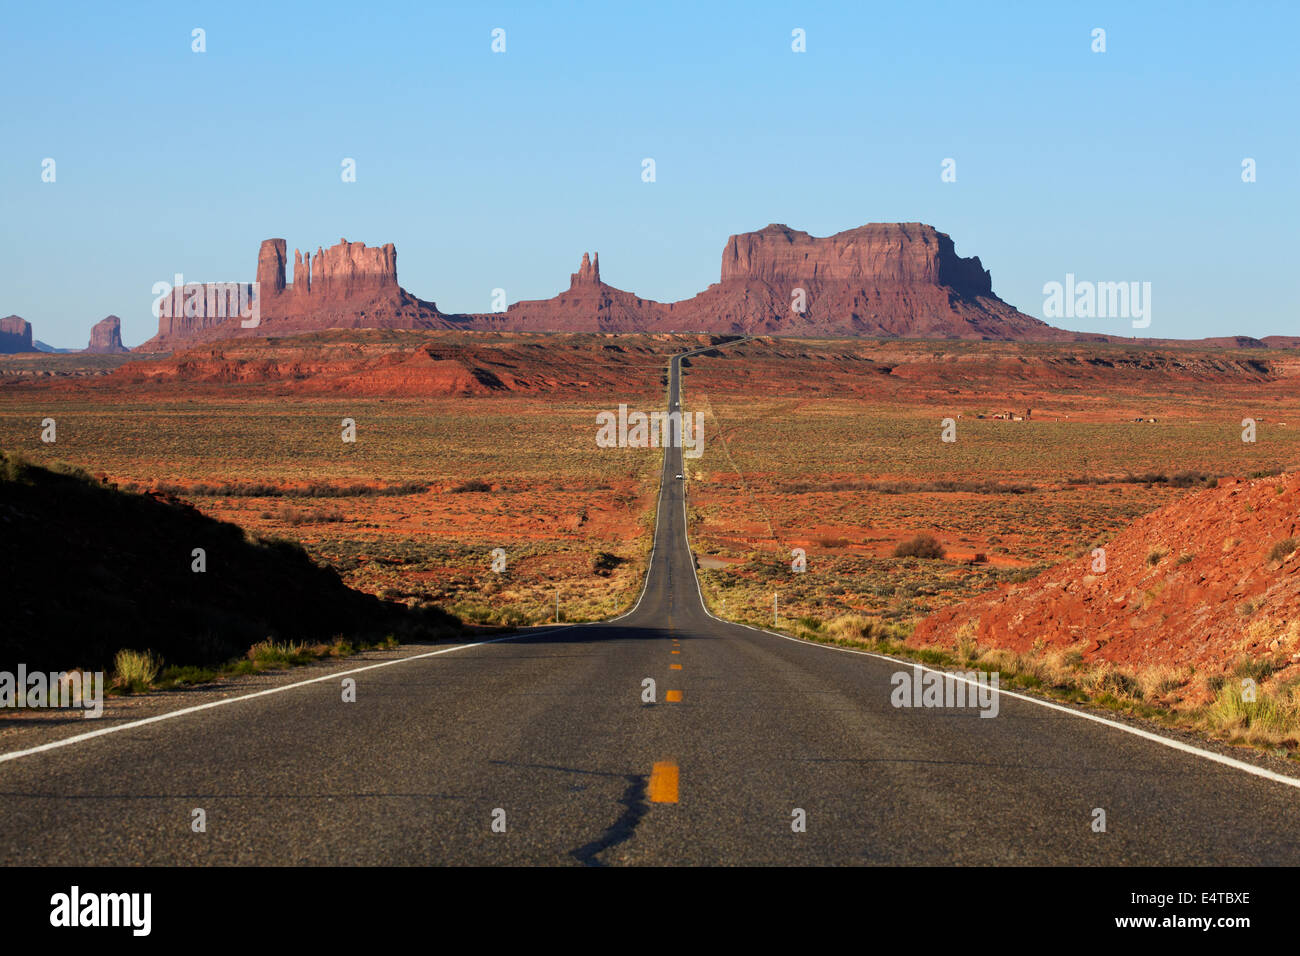 U.S. Route 163 heading towards Monument Valley, Navajo Nation, Utah, near Arizona Border, USA Stock Photo